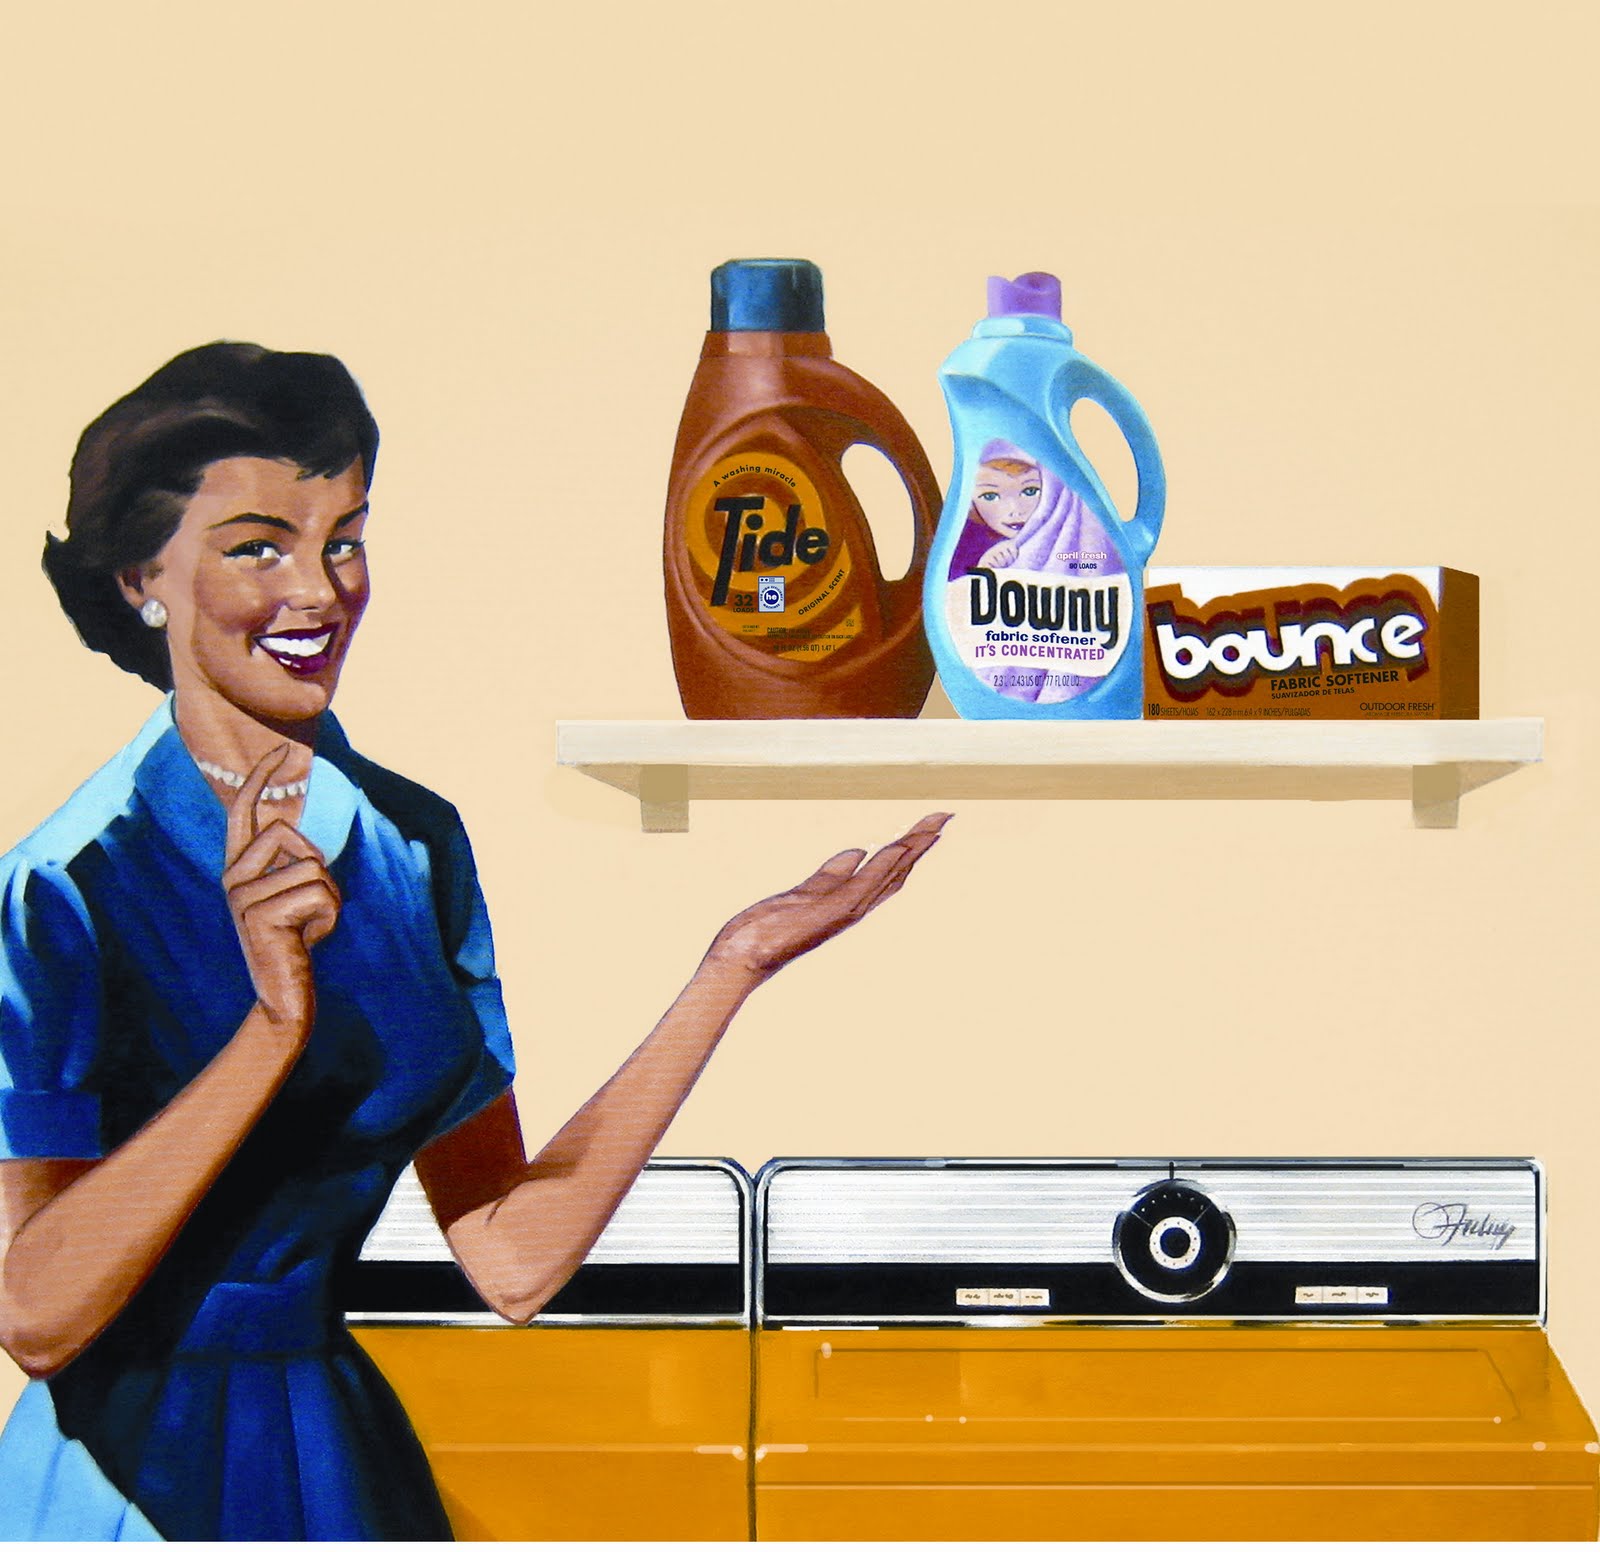 Реклама порошка тайд. Реклама стирального порошка. Реклама чистящего средства. Средства для стирки реклама. Рекламные плакаты моющих средств.